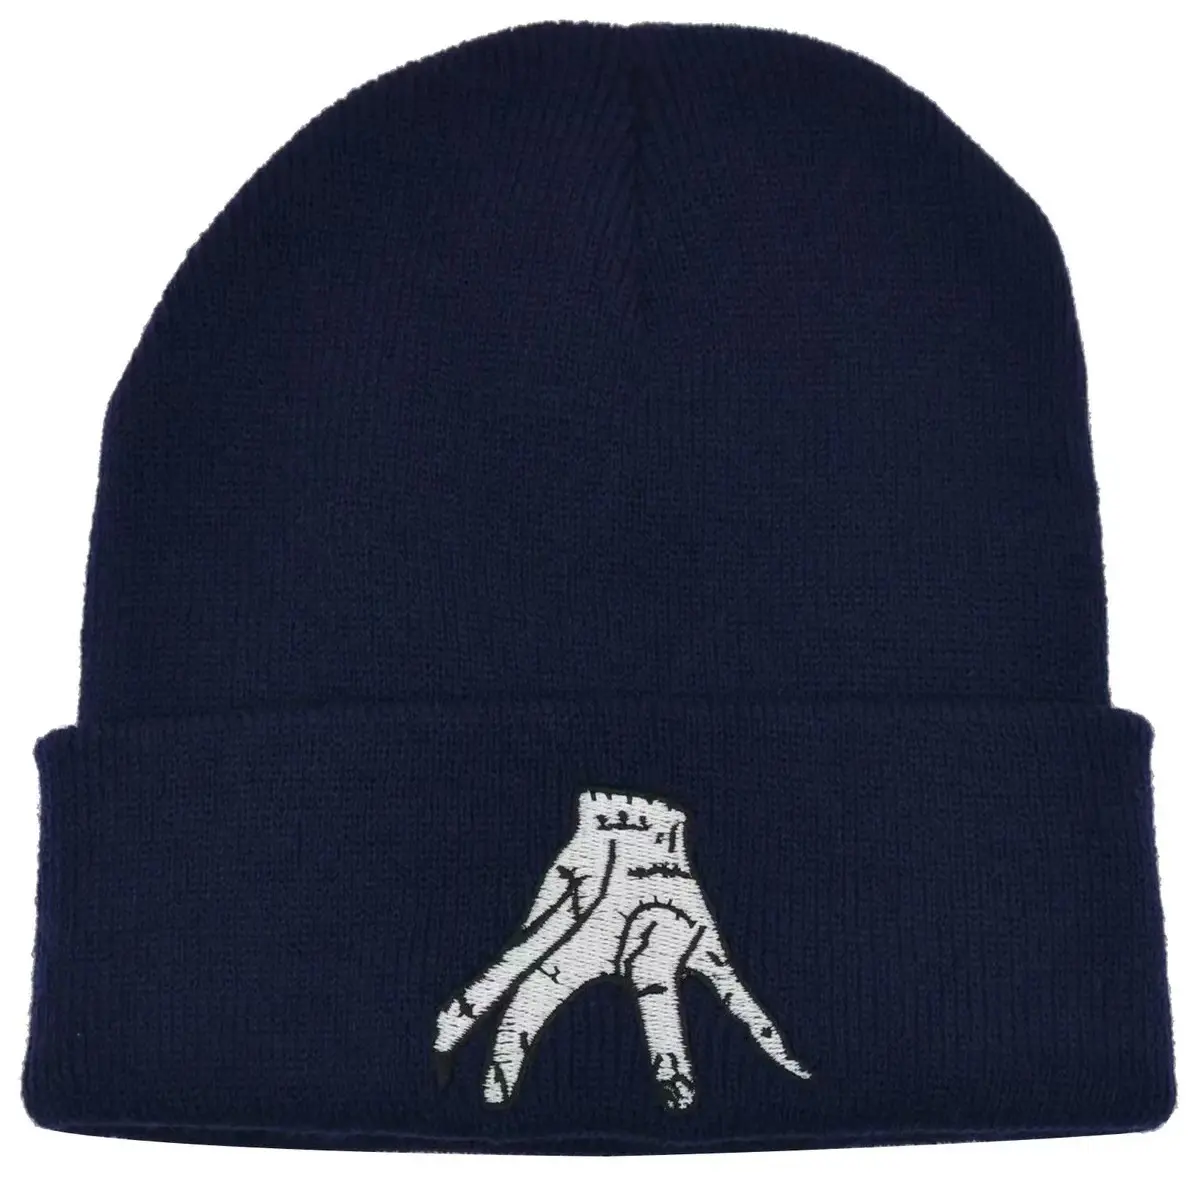 American High Street Fashion adulto cálido deportes de punto sombrero de invierno sombrero de punto para personalizar